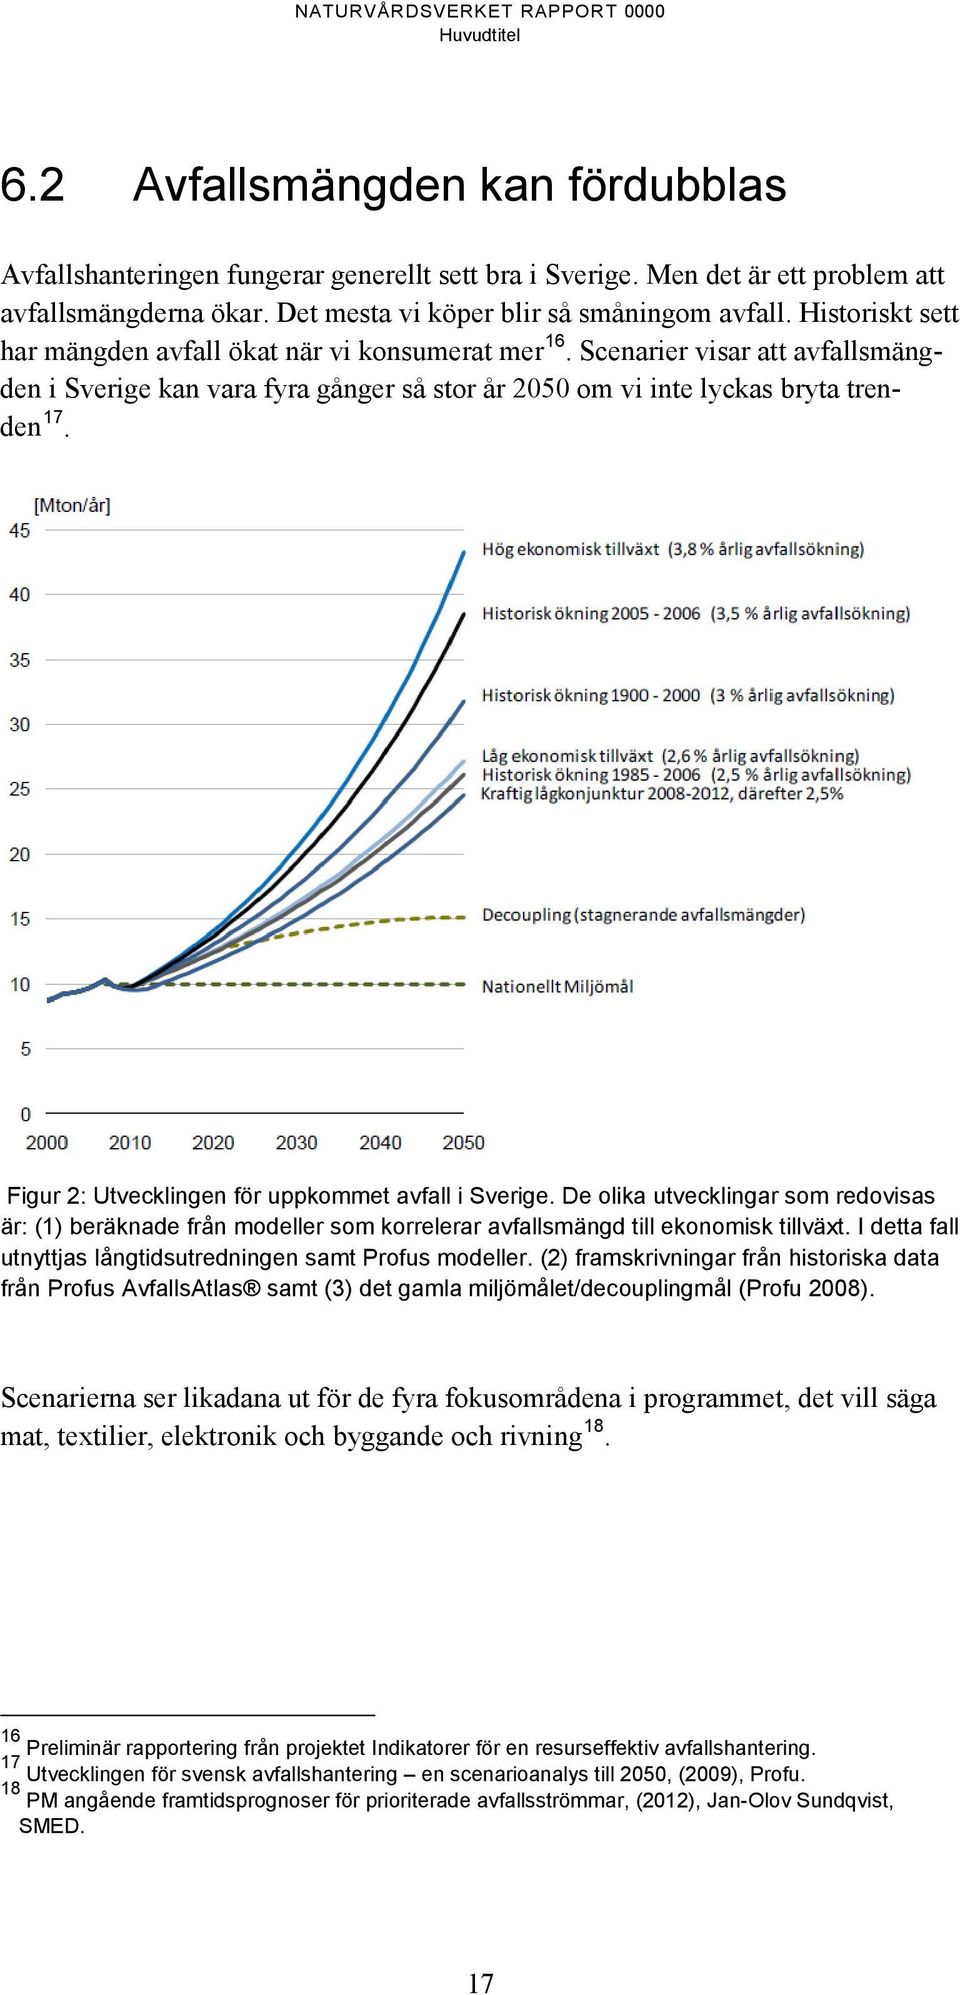 Figur 2: Utvecklingen för uppkommet avfall i Sverige. De olika utvecklingar som redovisas är: (1) beräknade från modeller som korrelerar avfallsmängd till ekonomisk tillväxt.